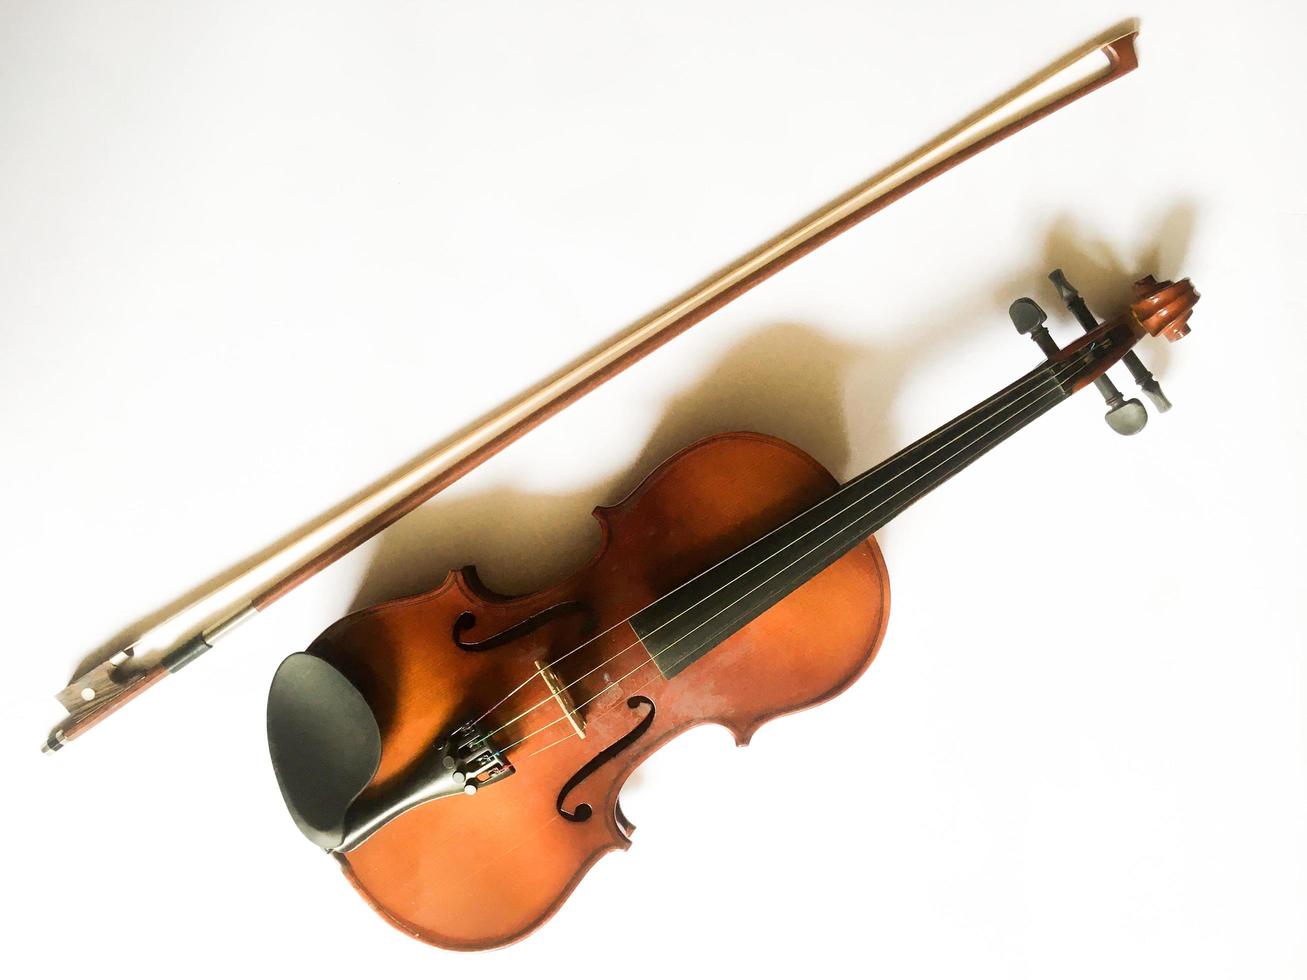 een viool en strijkstok geïsoleerd op wit met kopie ruimte. een klassieke muziekinstrumentaal gespeeld met swiped die meestal wordt uitgevoerd in klassieke muziekshows. foto